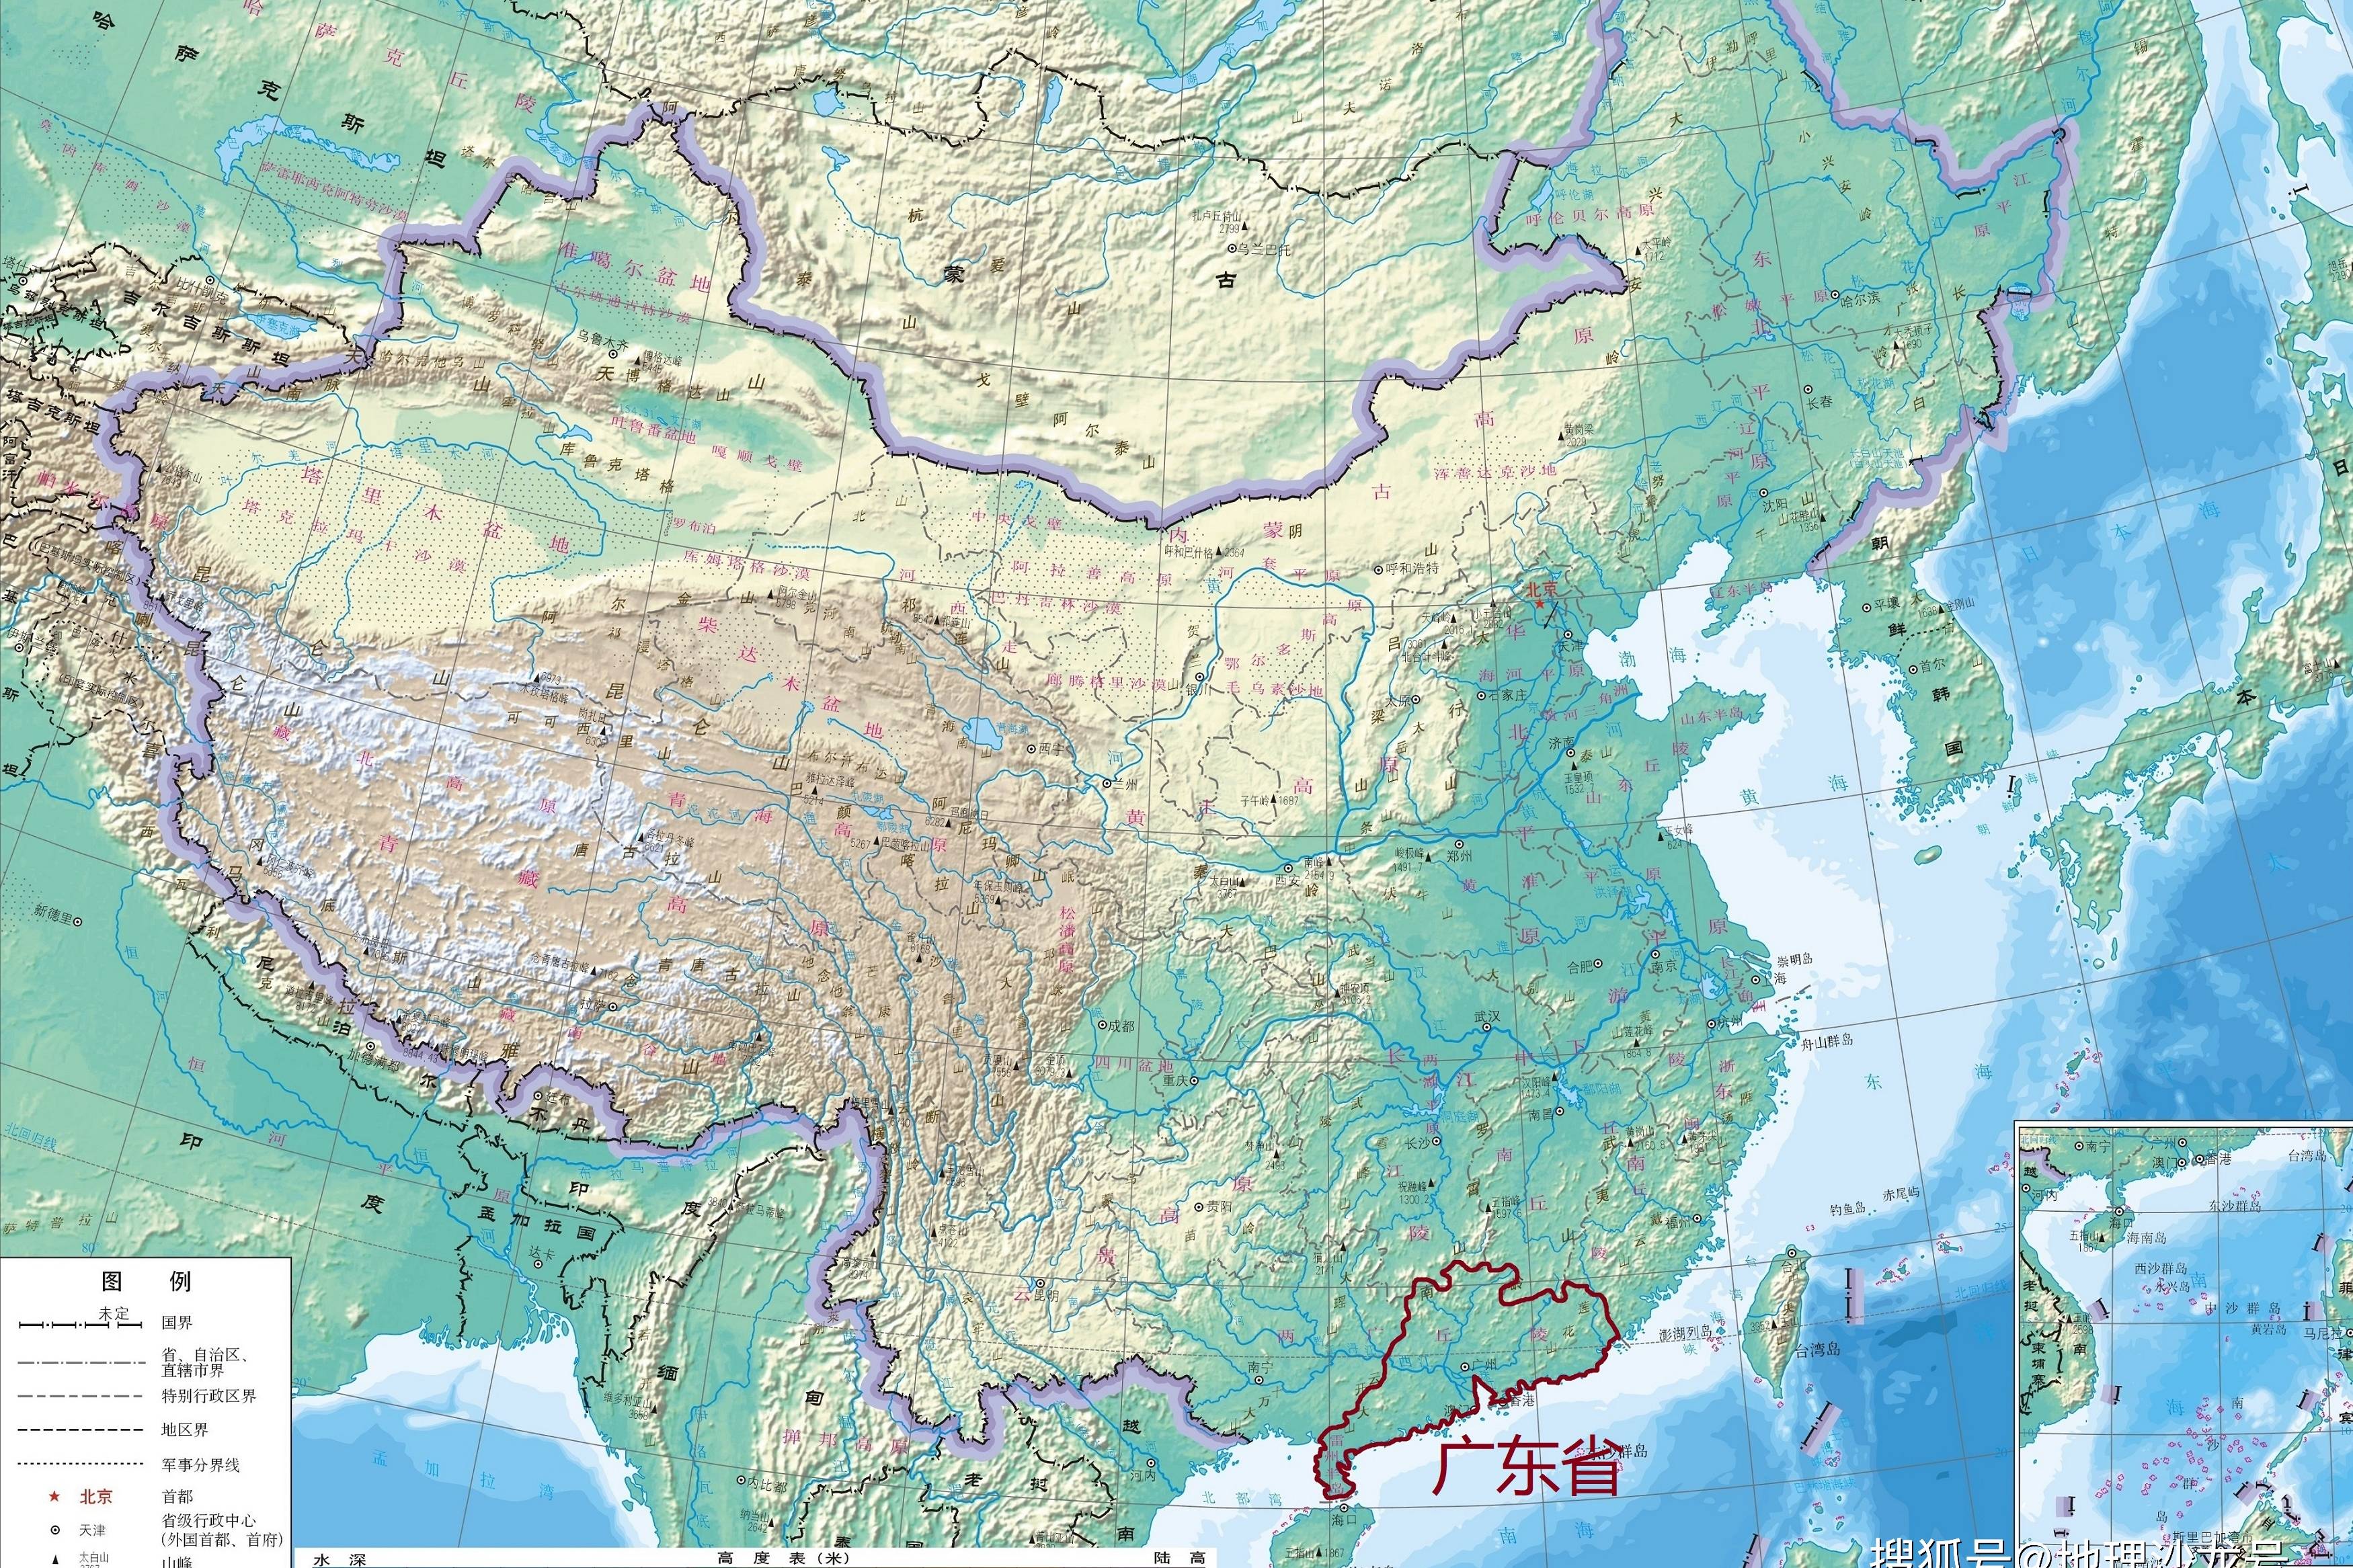 广东省地形特征:以山地,丘陵地形为主,珠三角地区地势低平